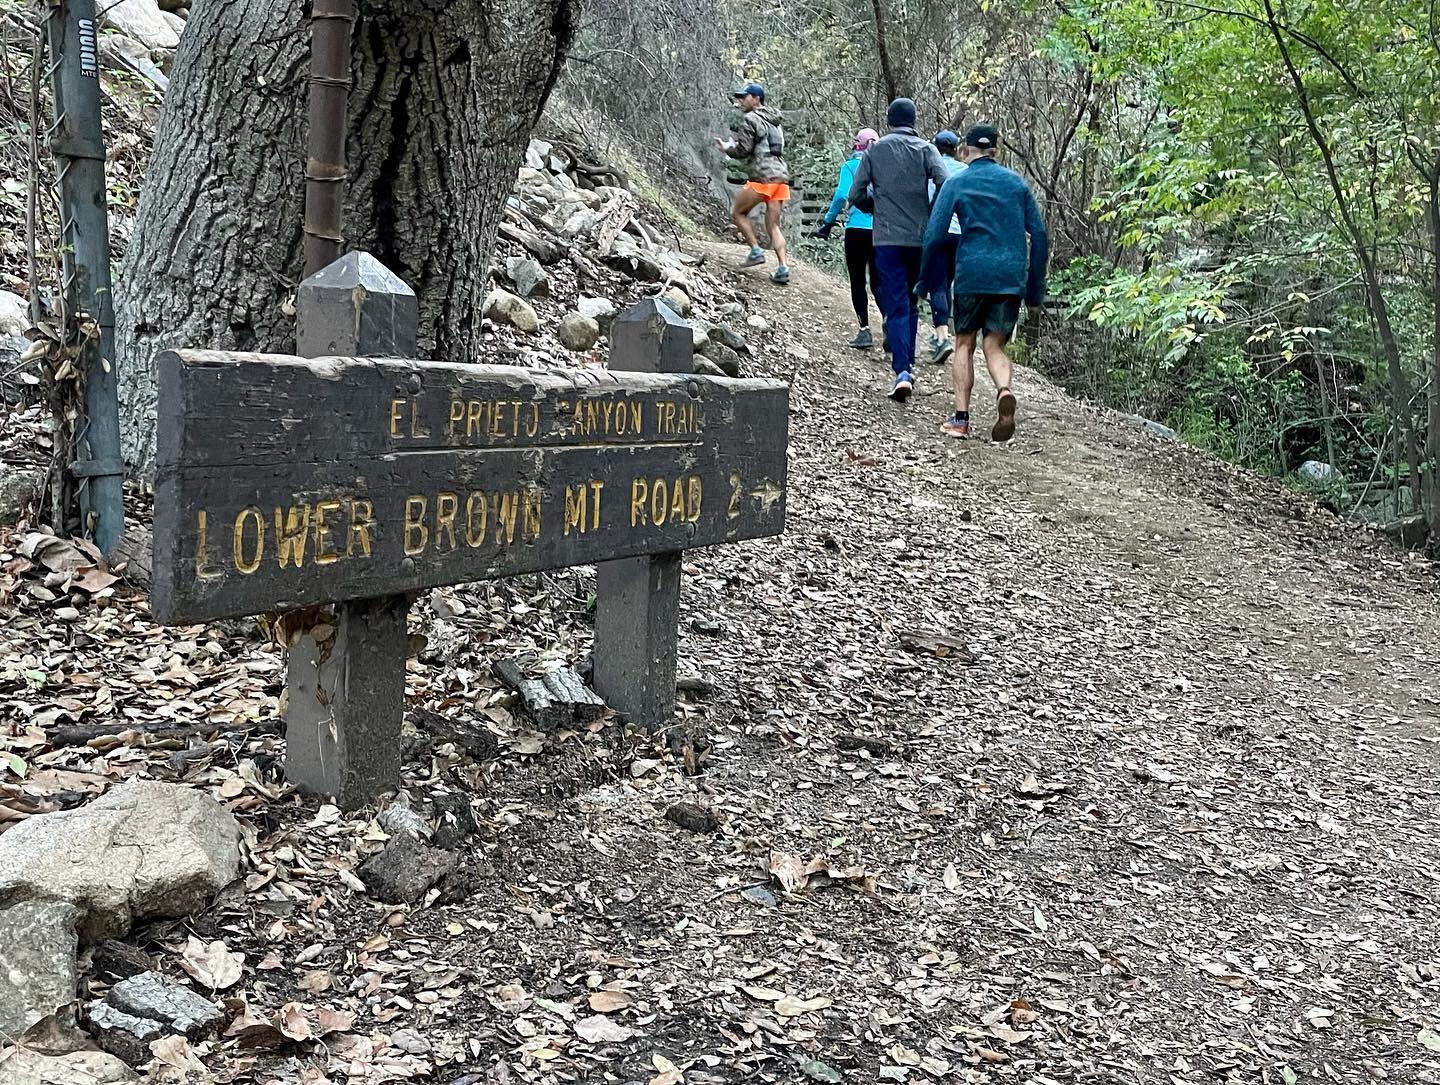 El Prieto Canyon Trail